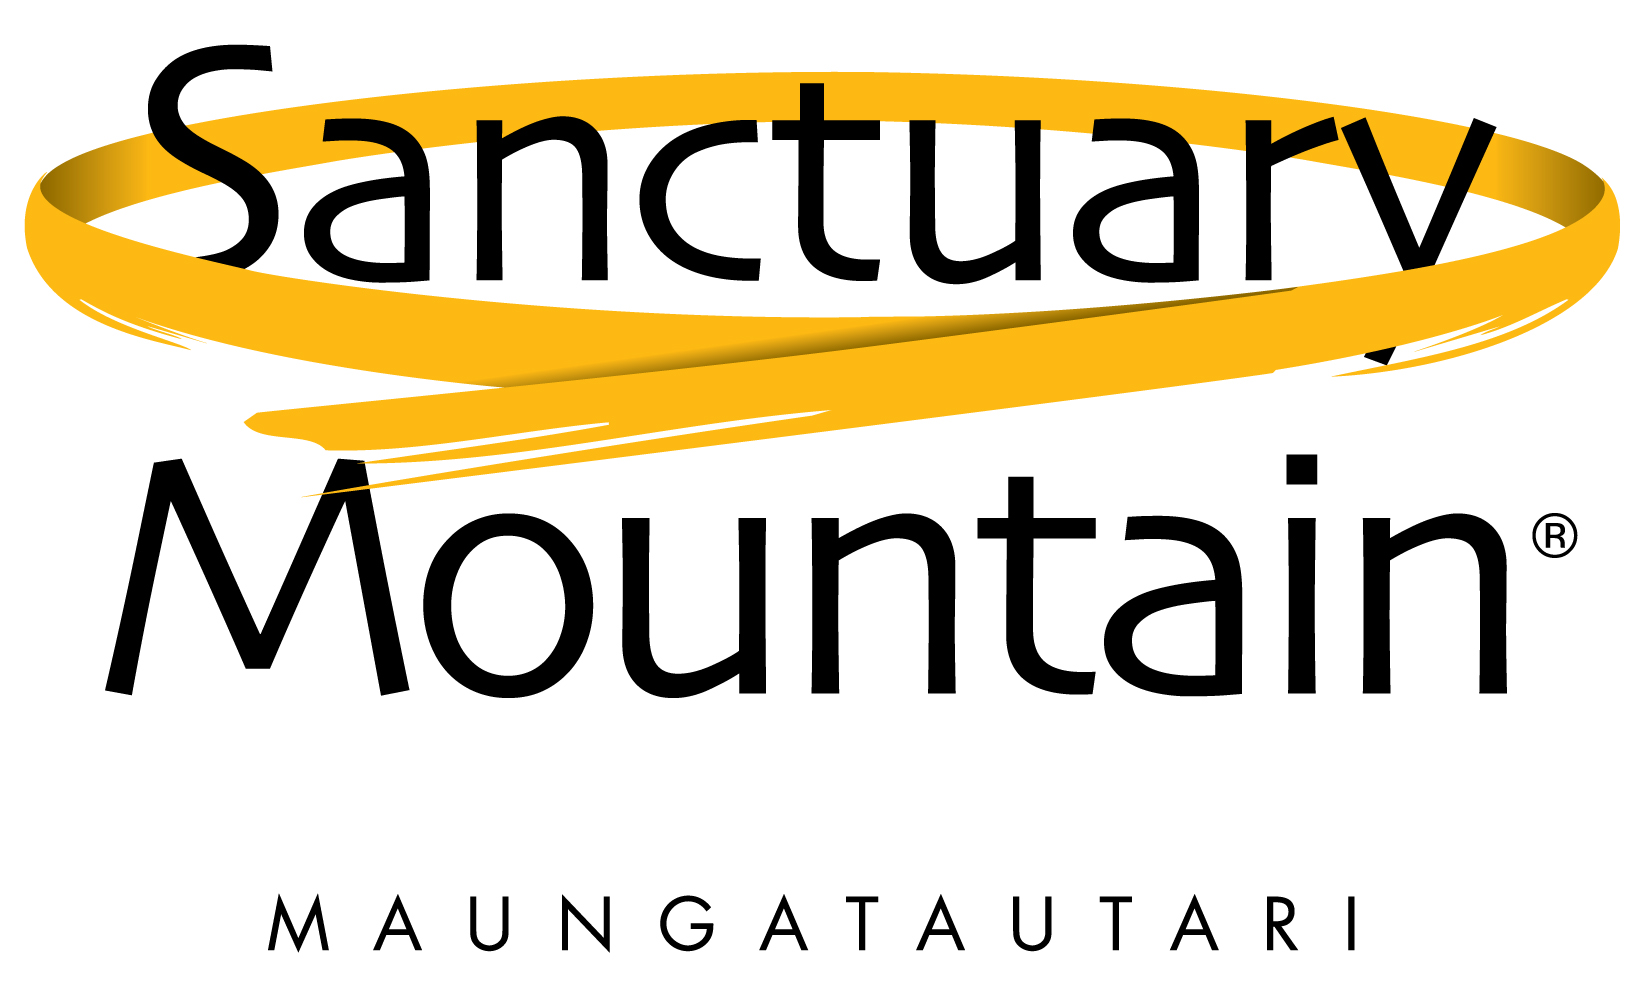 Sanctuary Mountain